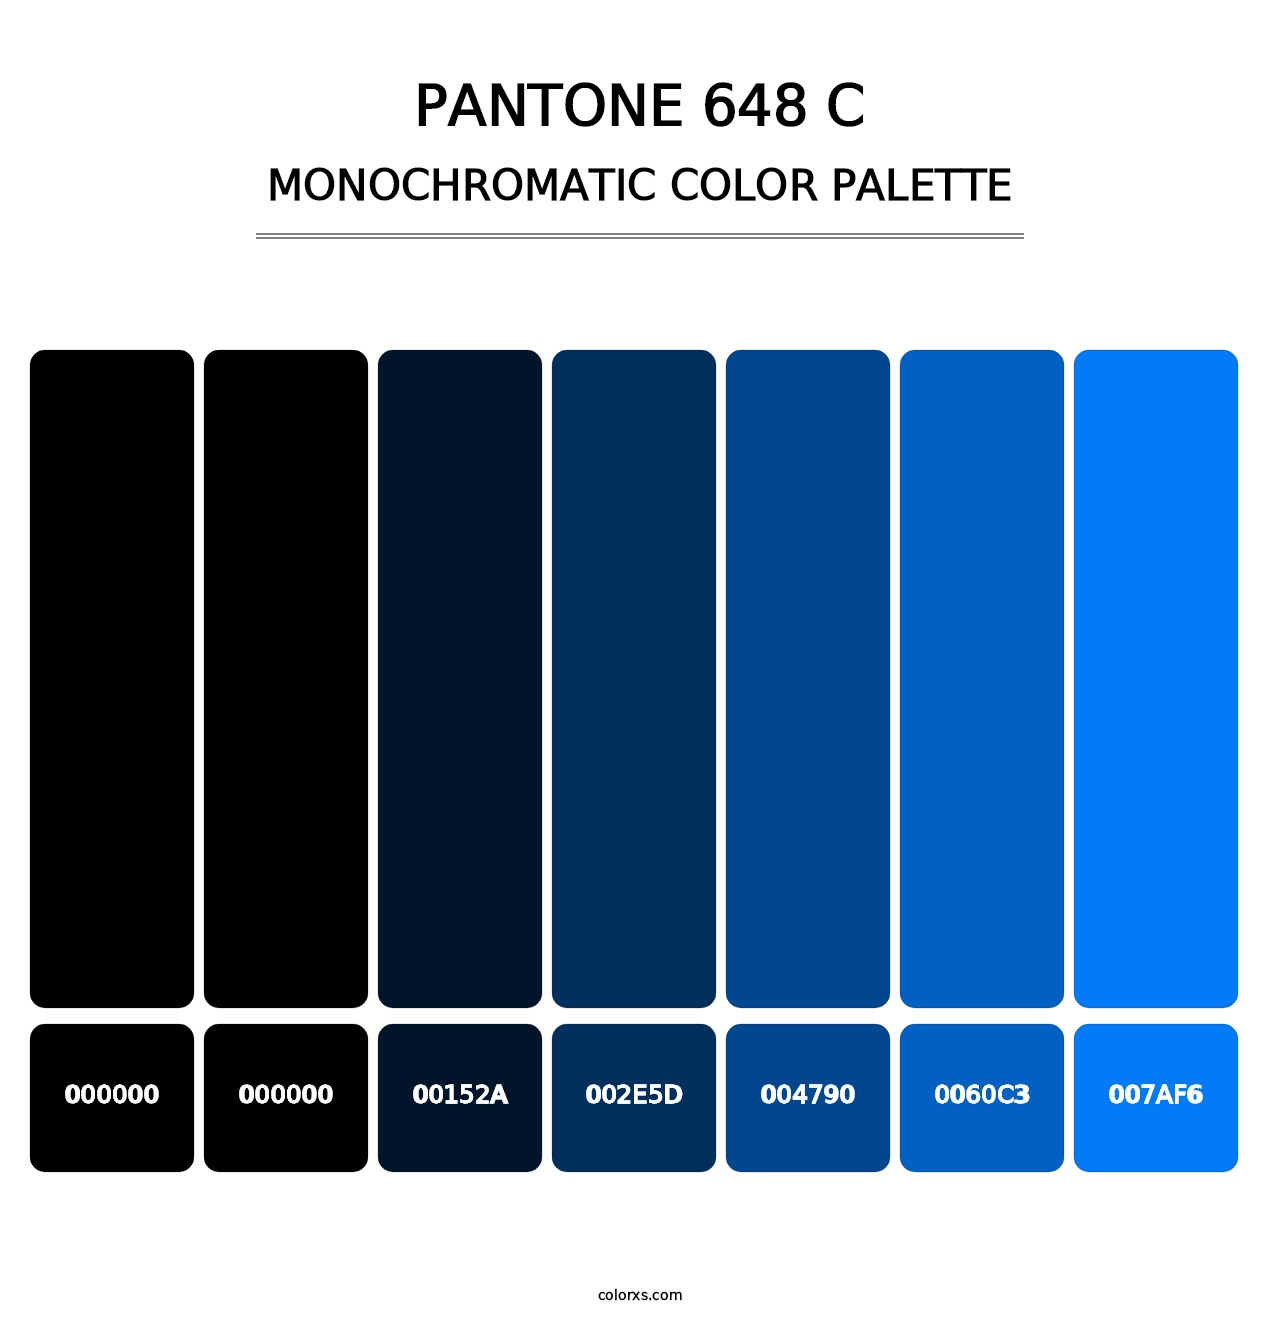 PANTONE 648 C - Monochromatic Color Palette